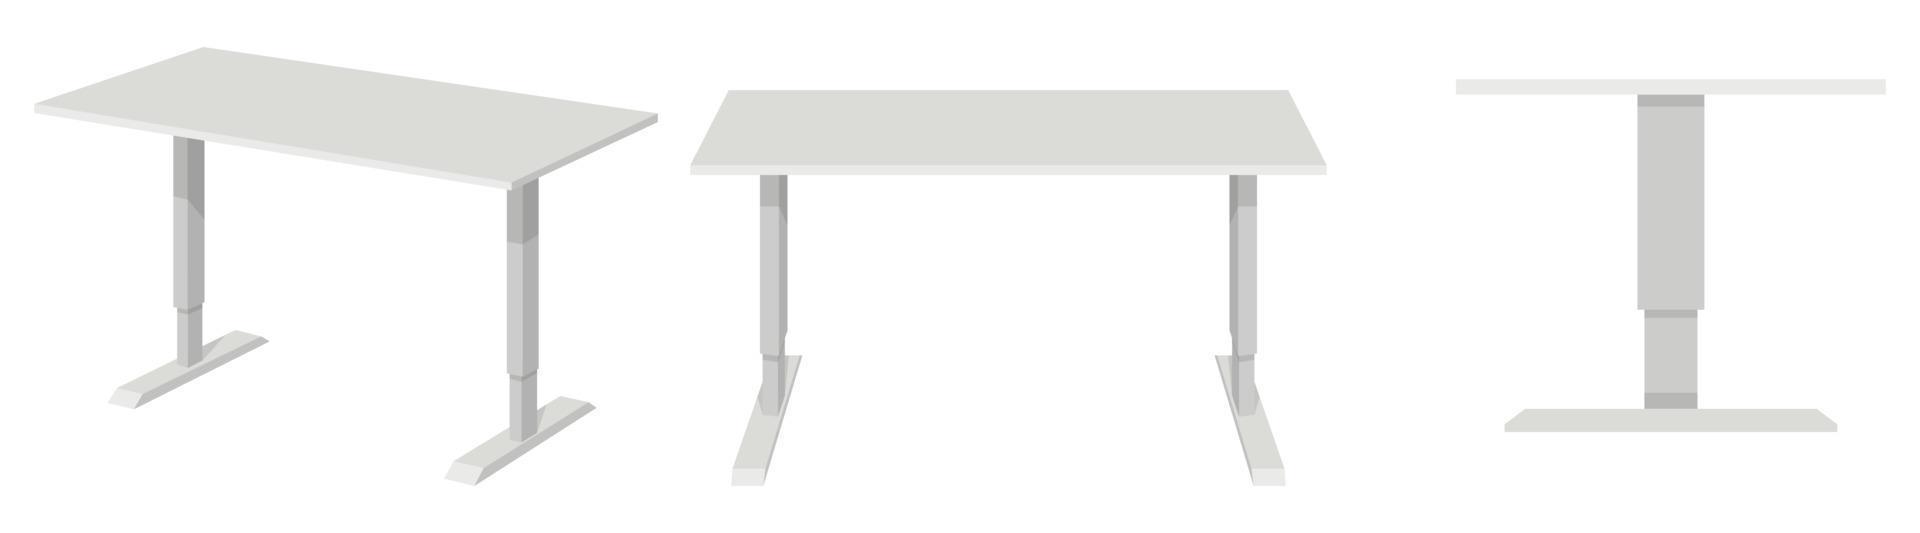 schöner süßer moderner Tisch mit verschiedenen Posen und Positionen vektor